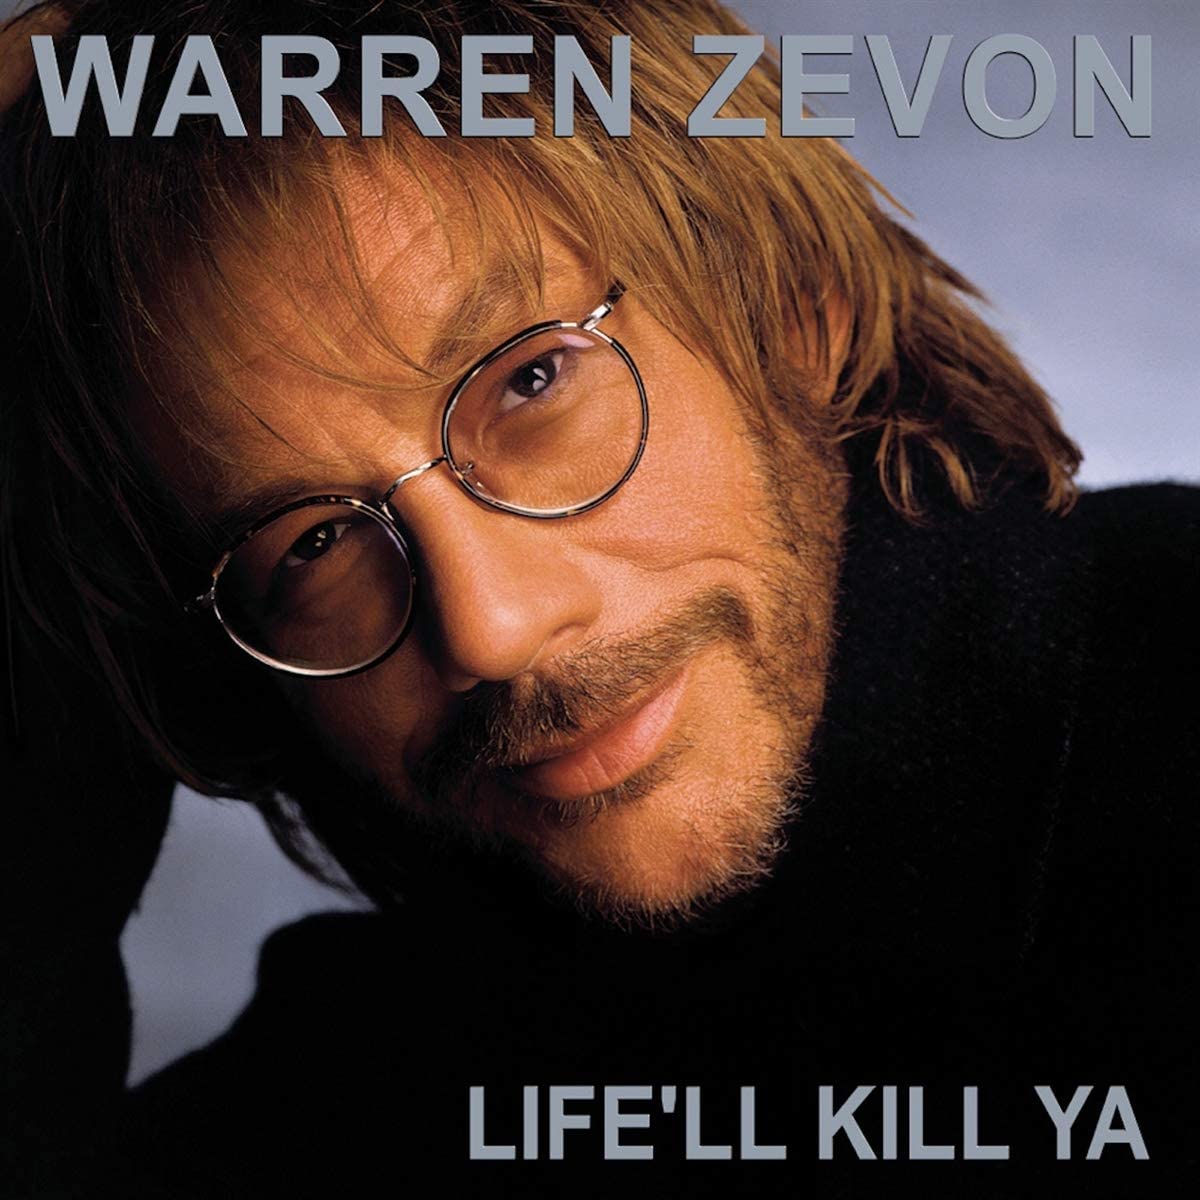 Zevon, Warren/Life'll Kill Ya [LP]